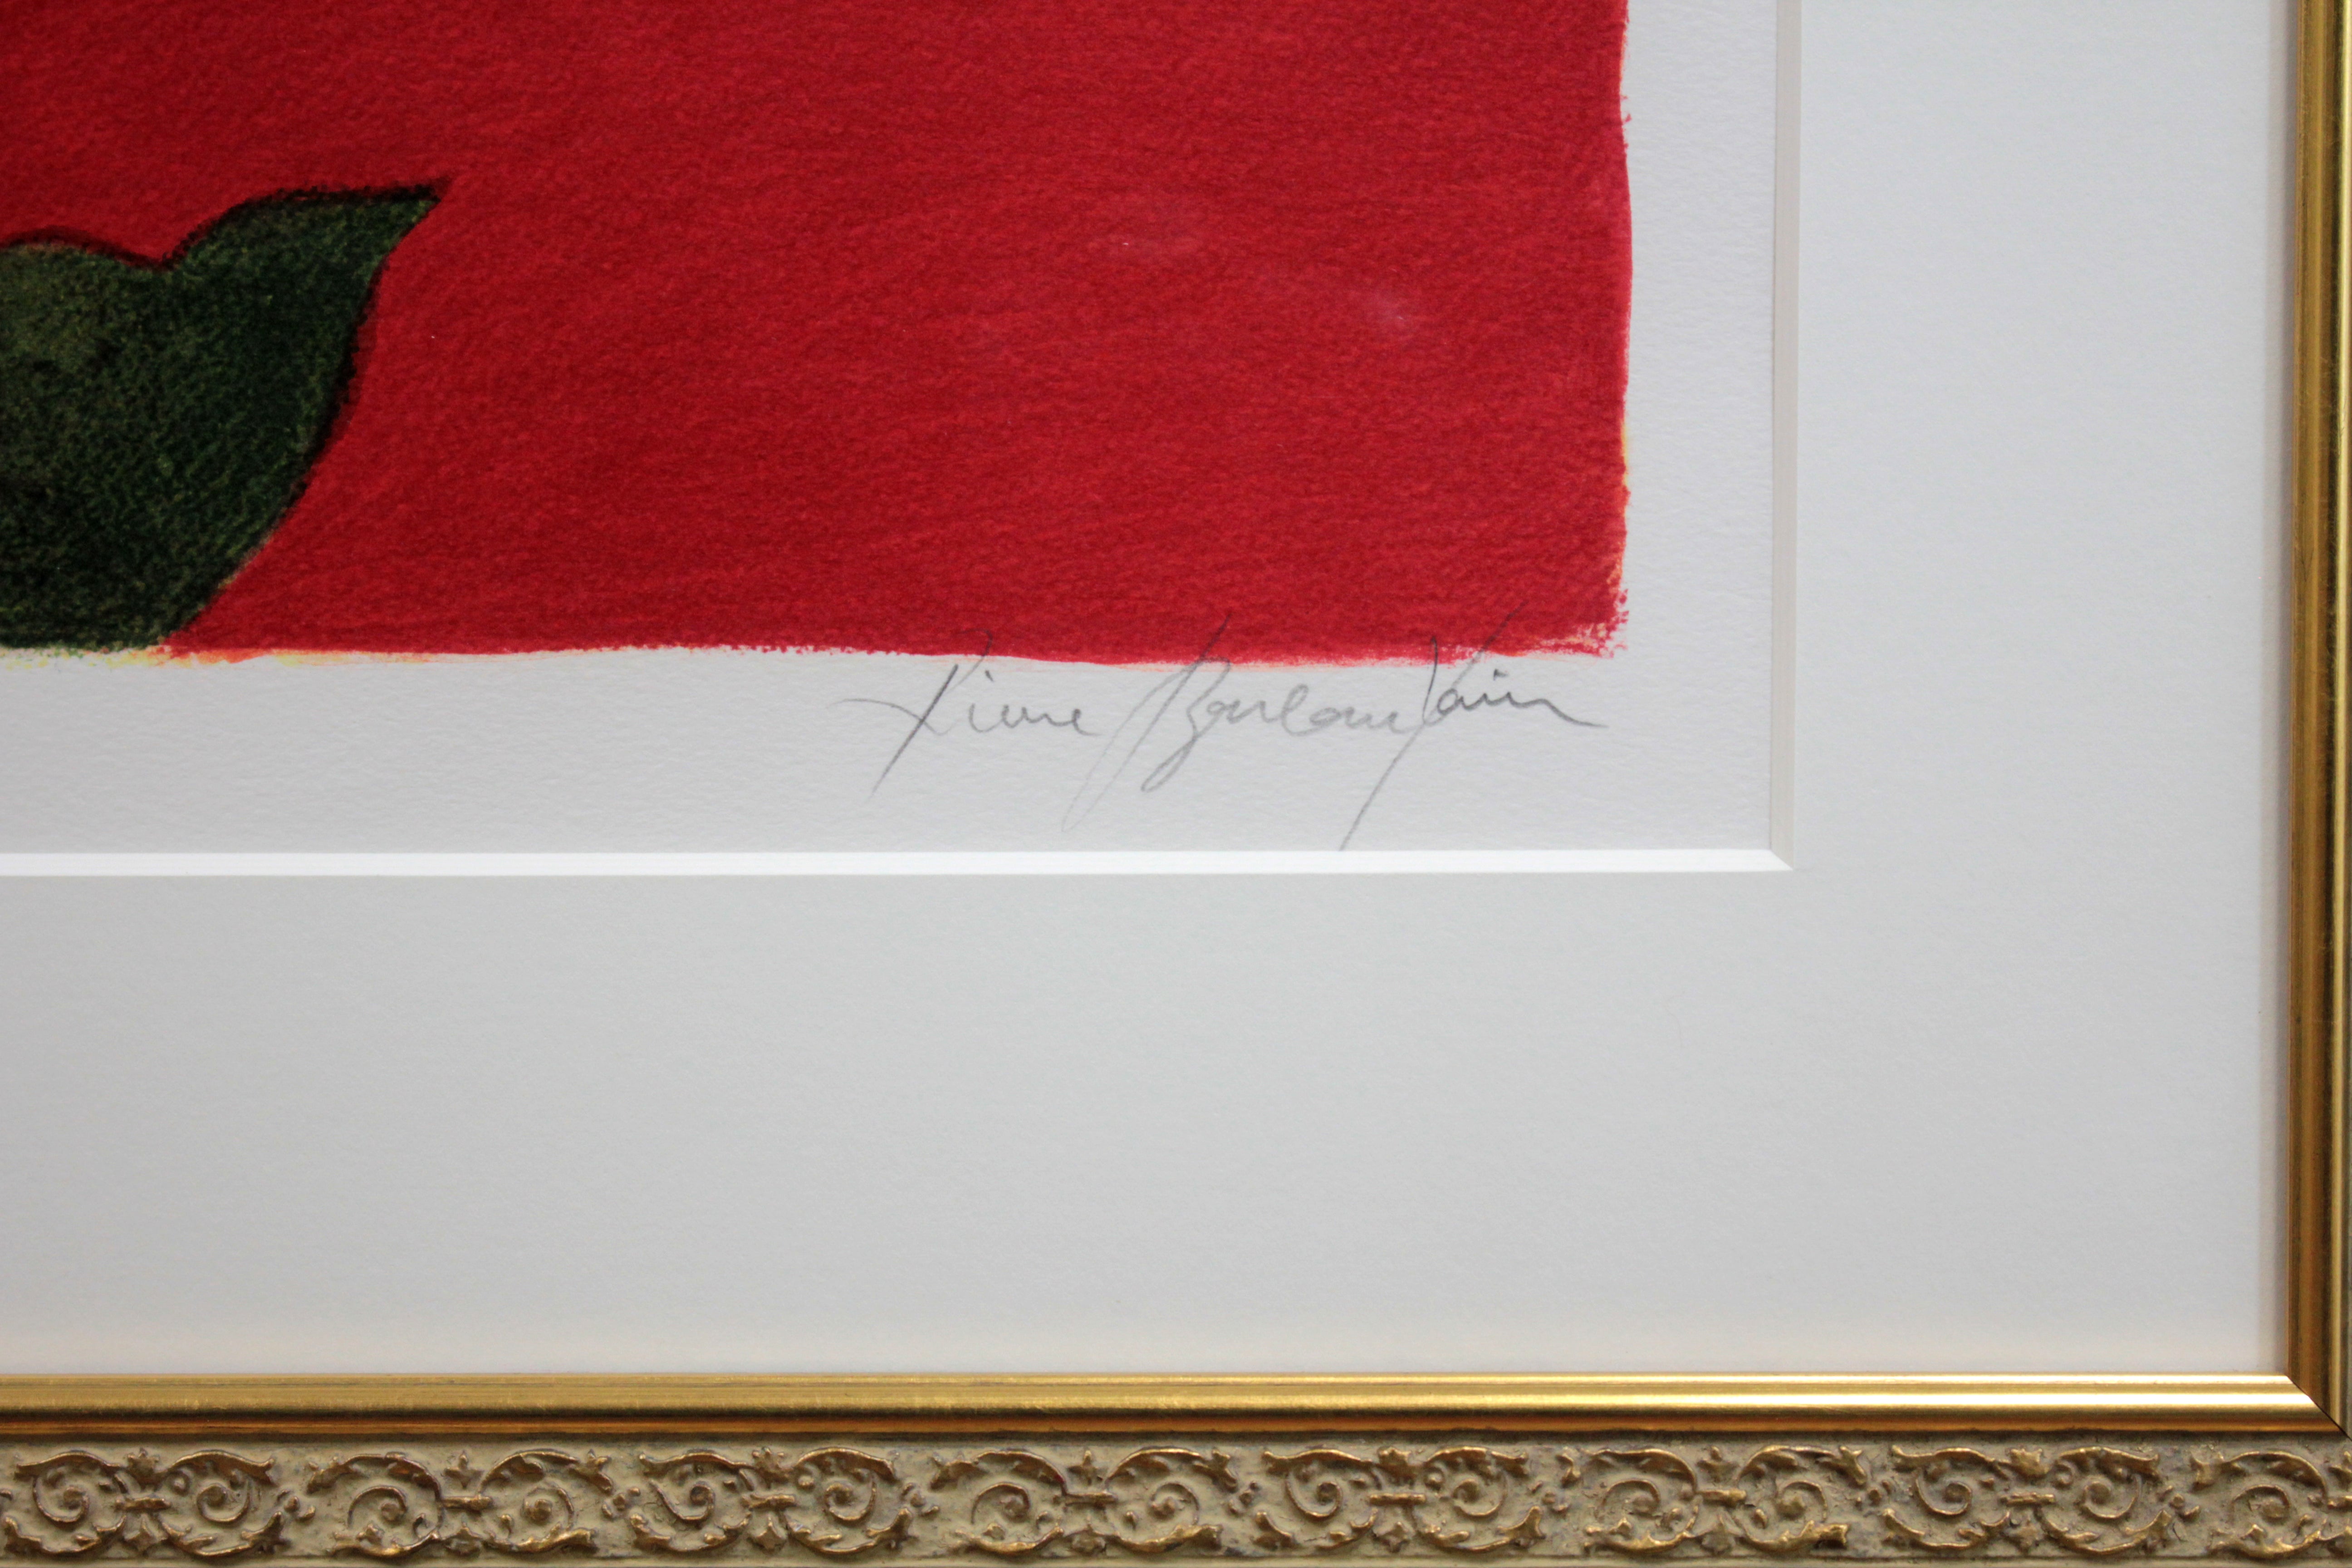 【大人気新品】真作保証 ピエール・ボンコンパン 大判リトグラフ「Tulipes Rouge」画寸47cm×62cm 仏人作家 鮮やかな色彩と自由でのびやかな線の傑作 4329 石版画、リトグラフ